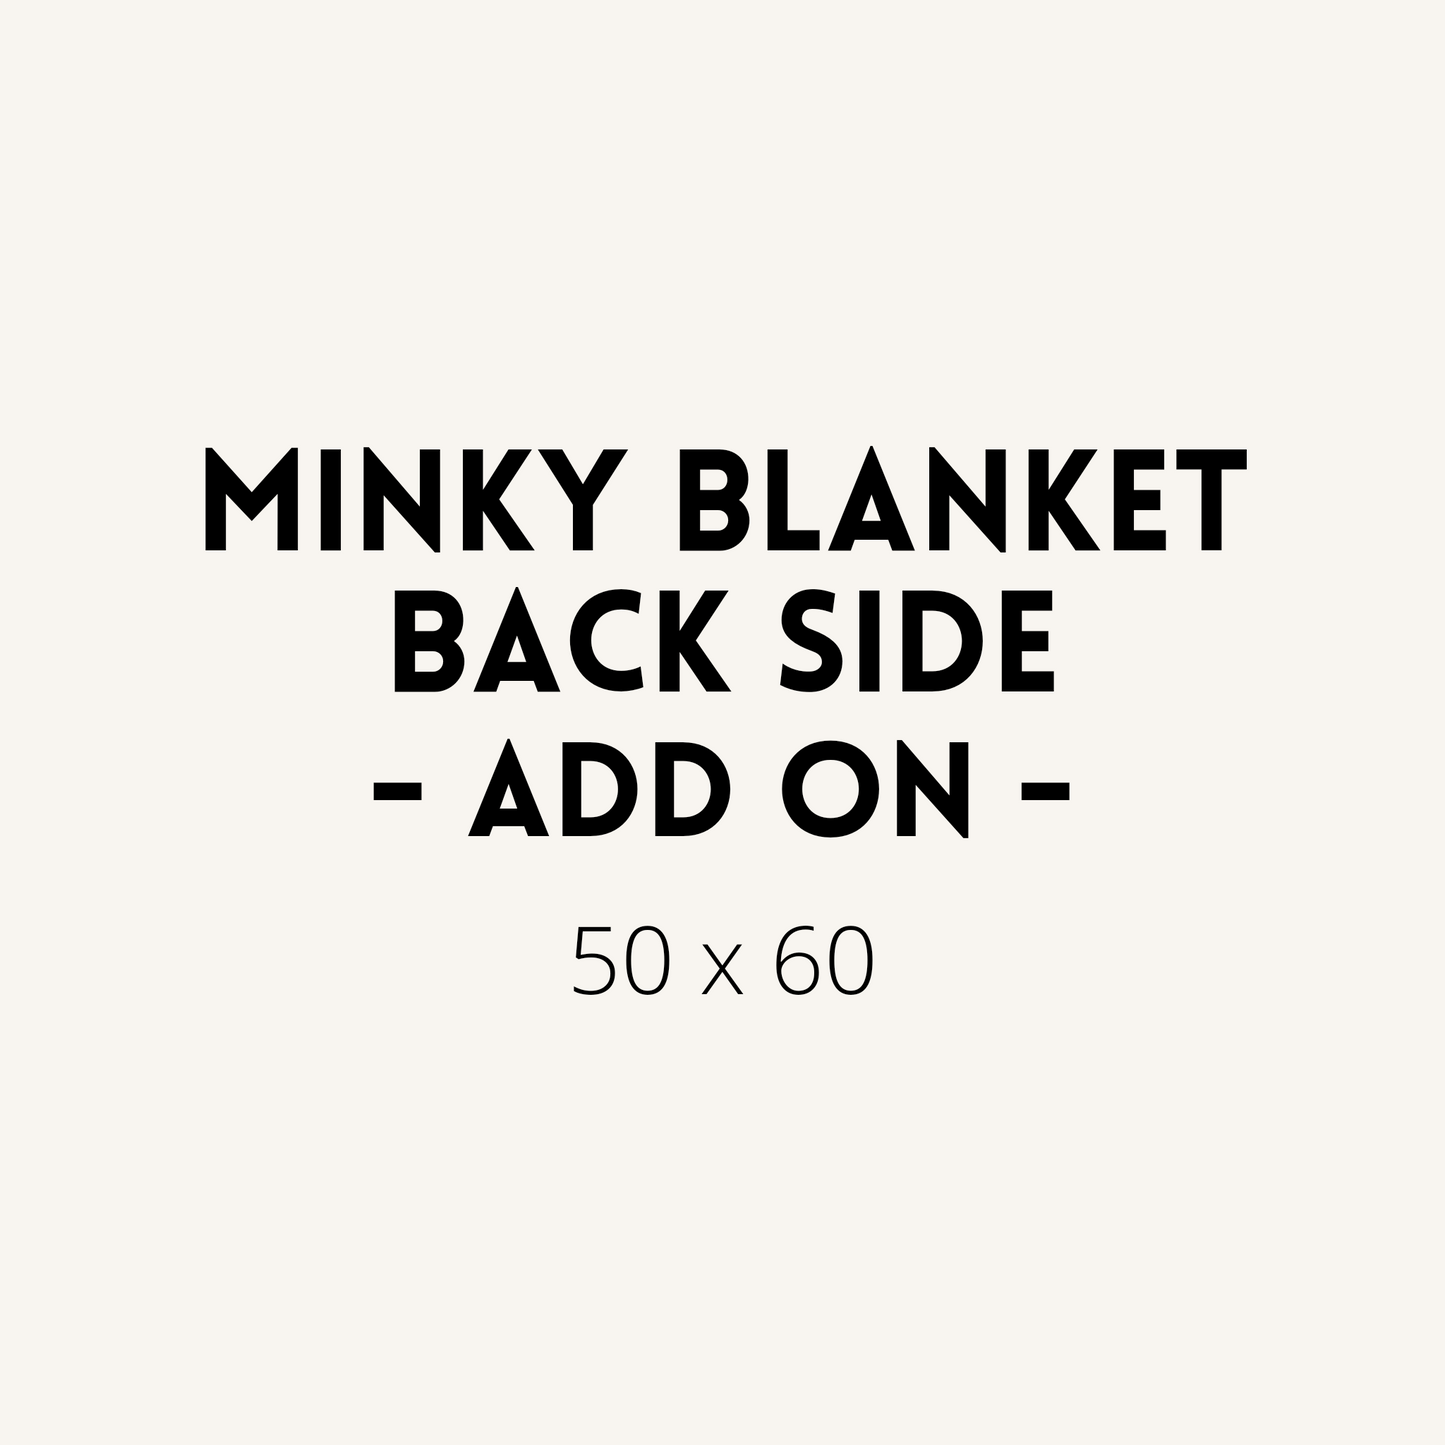 Minky Blanket Back Side Add On